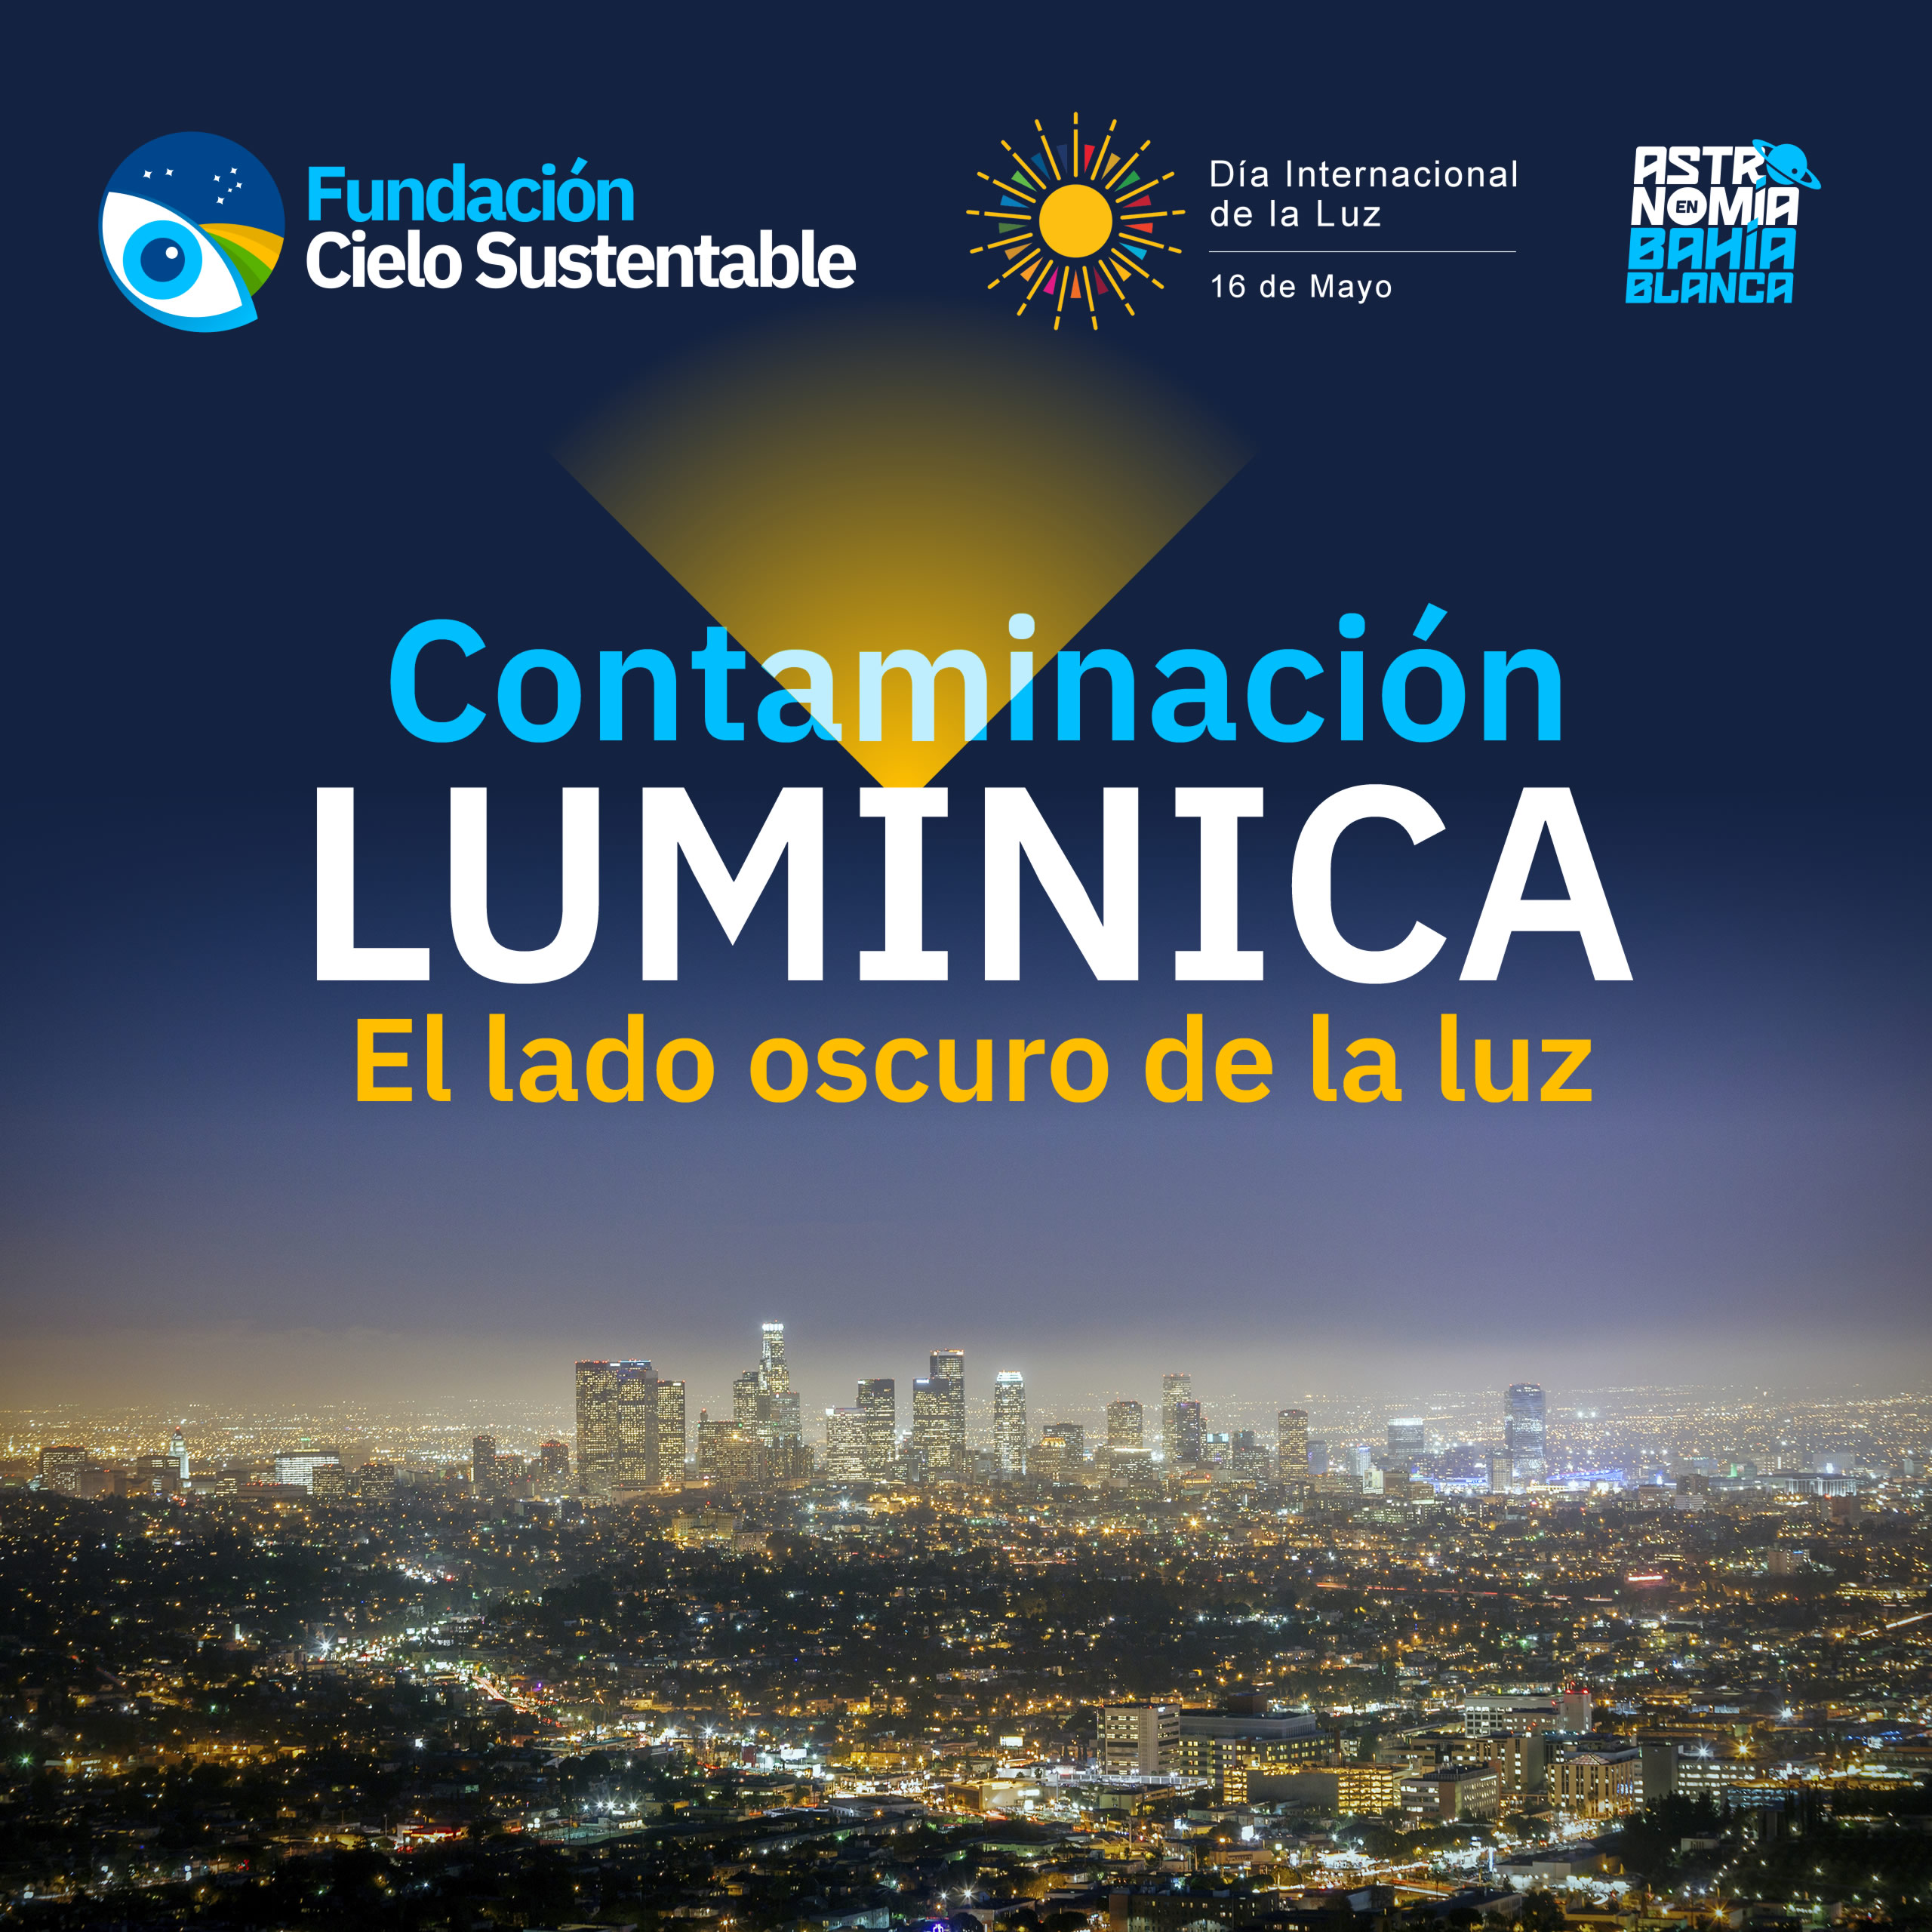 "Contaminación lumínica: El lado oscuro de la luz"